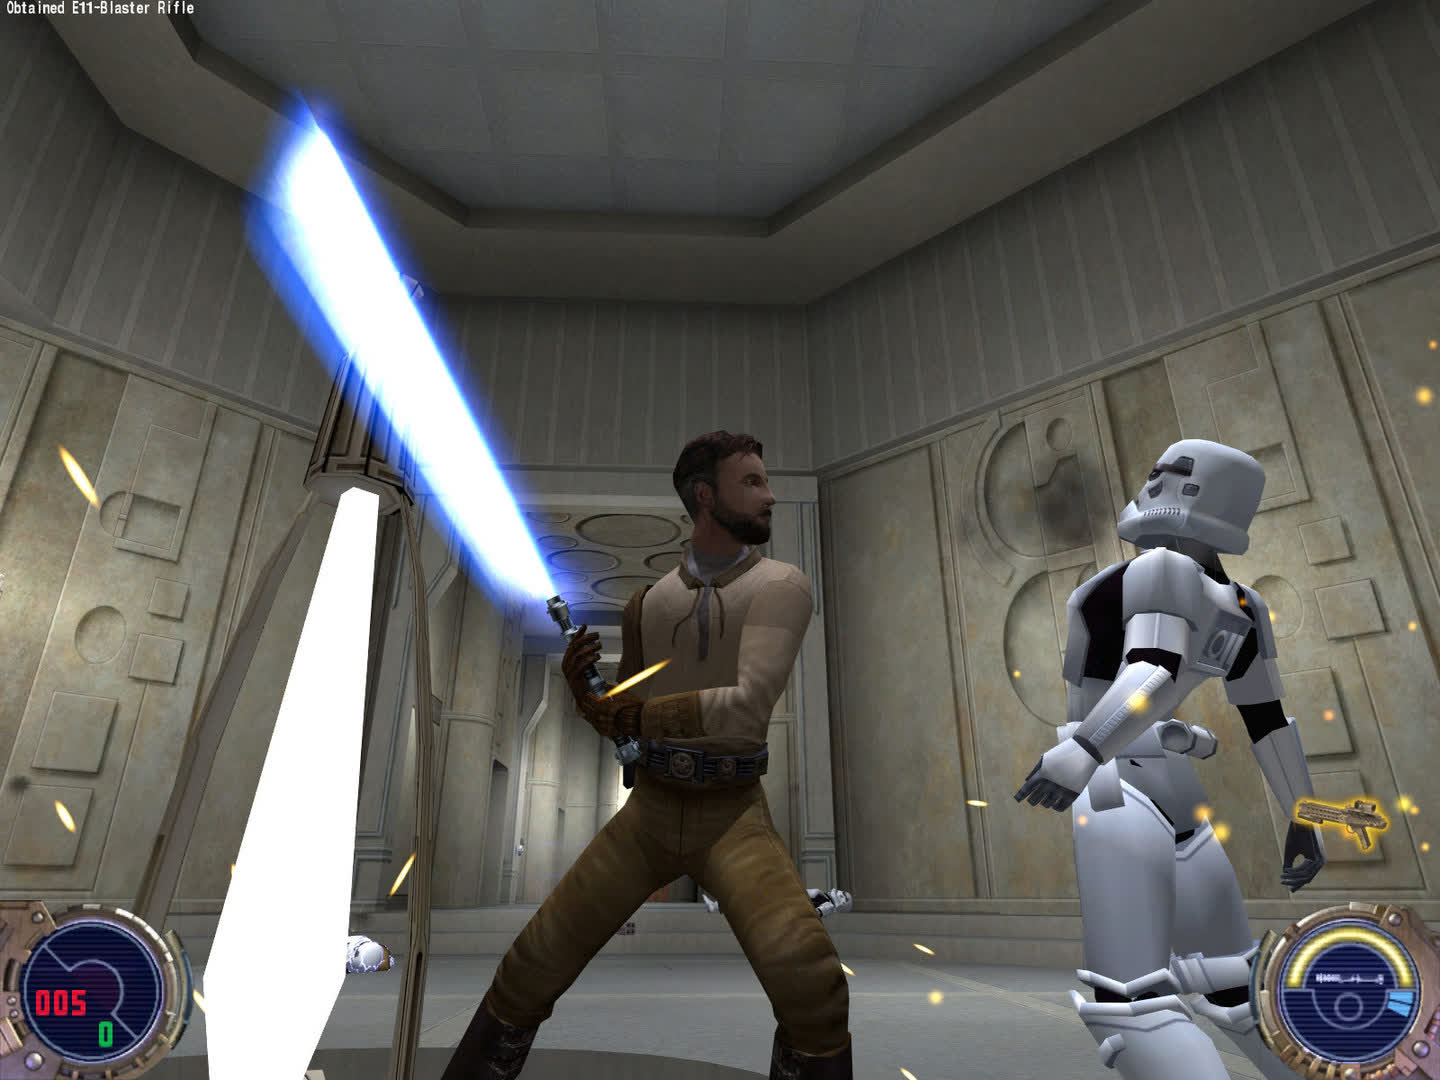 Star Wars Jedi Knight II: Jedi Outcast gets ported to VR